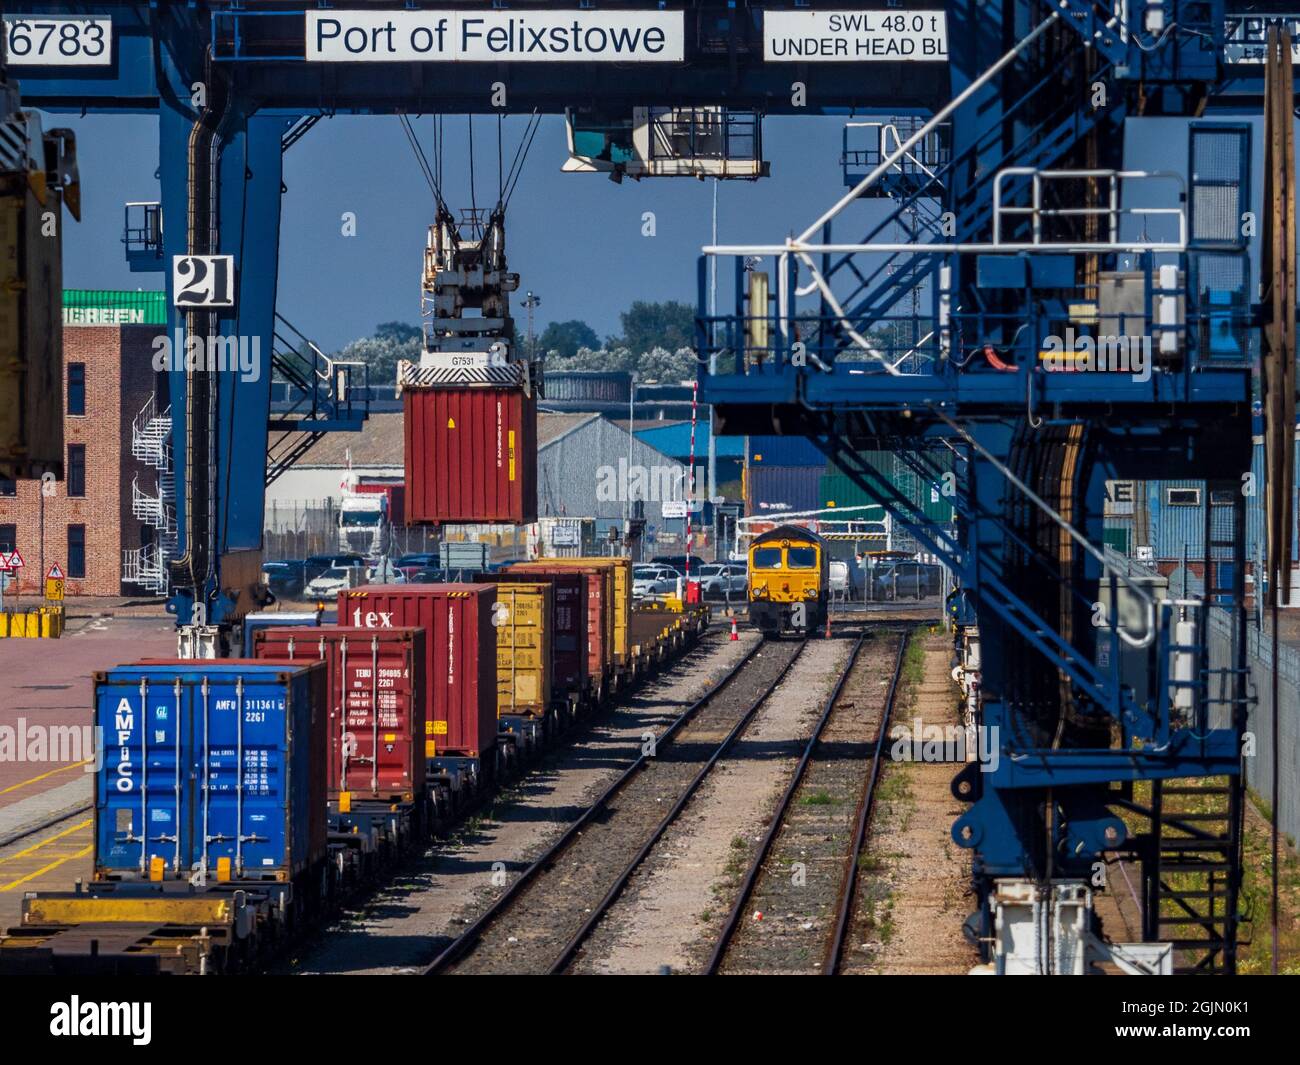 Rail Freight UK - intermodale Container werden in Güterzügen im Felixstowe Port, dem größten Containerhafen Großbritanniens, verladen. Stockfoto